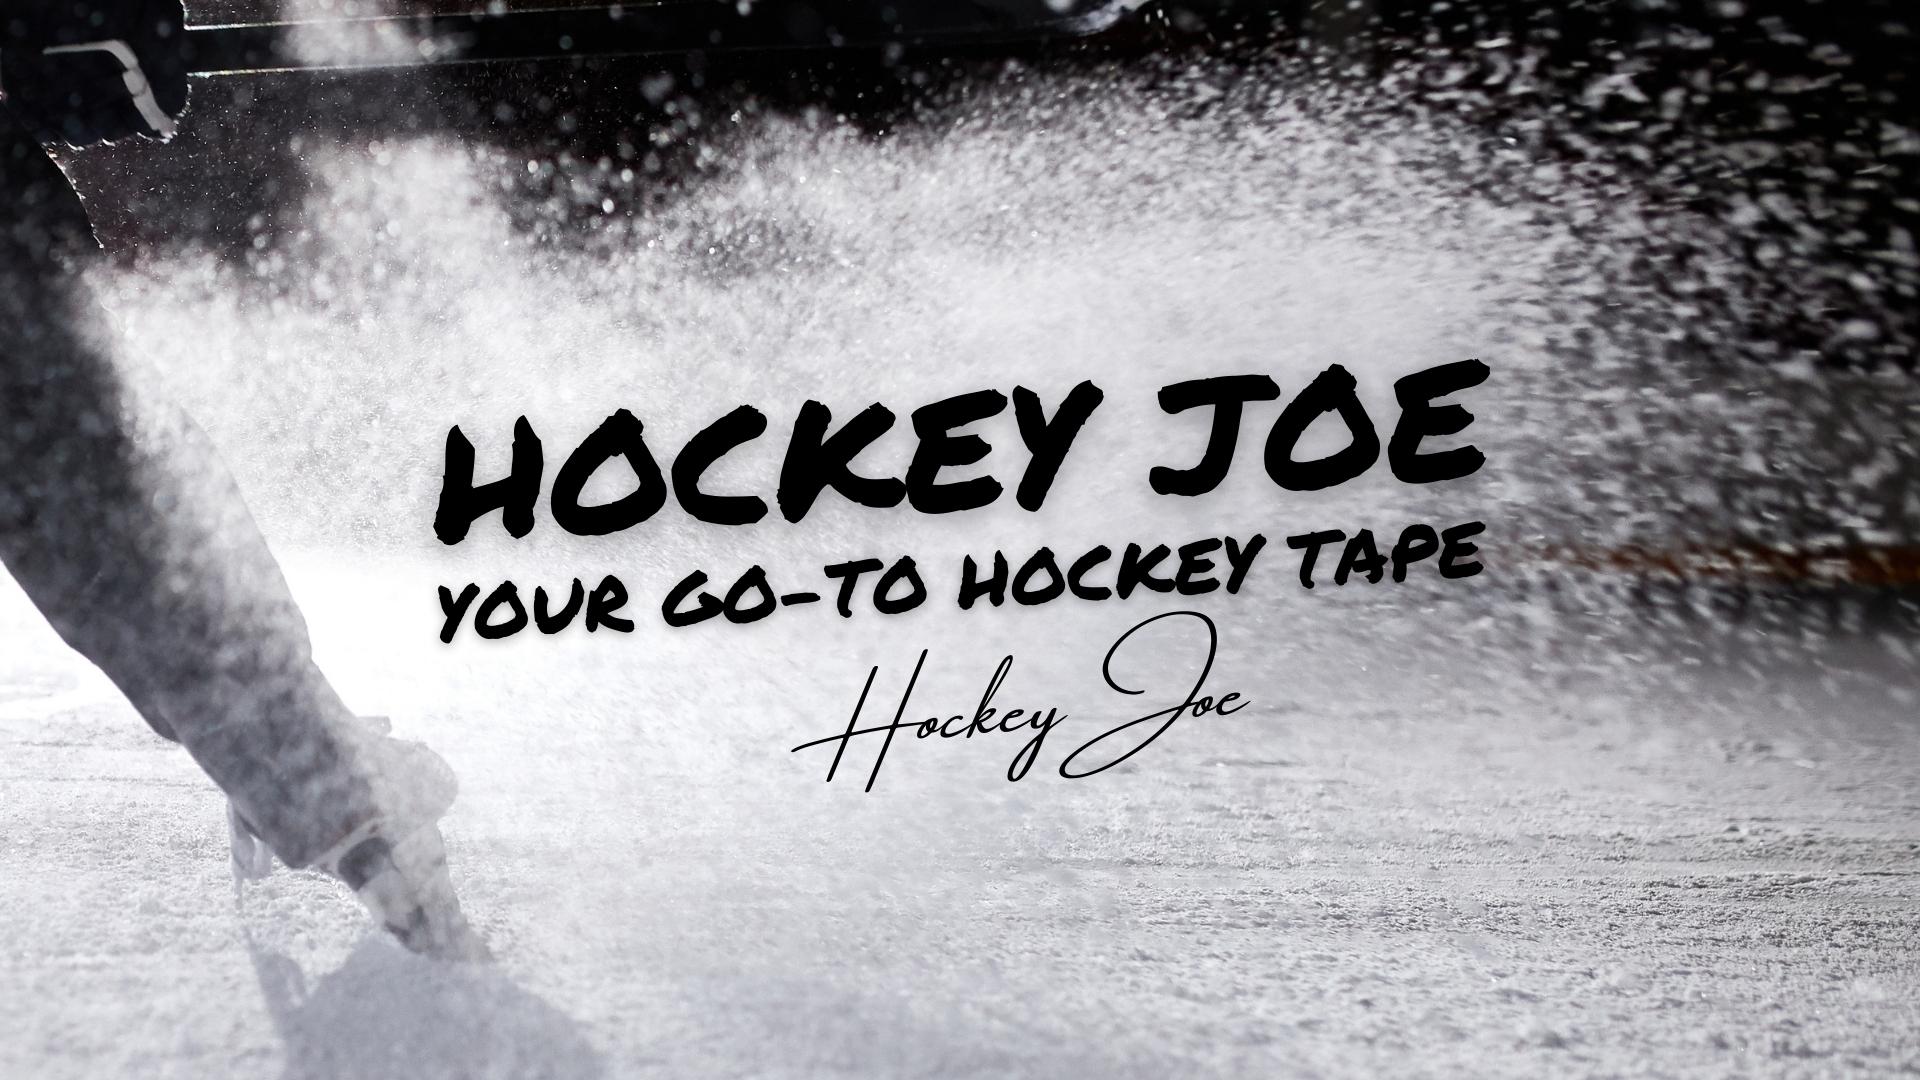 Make Hockey Joe Your Go-To Hockey Tape